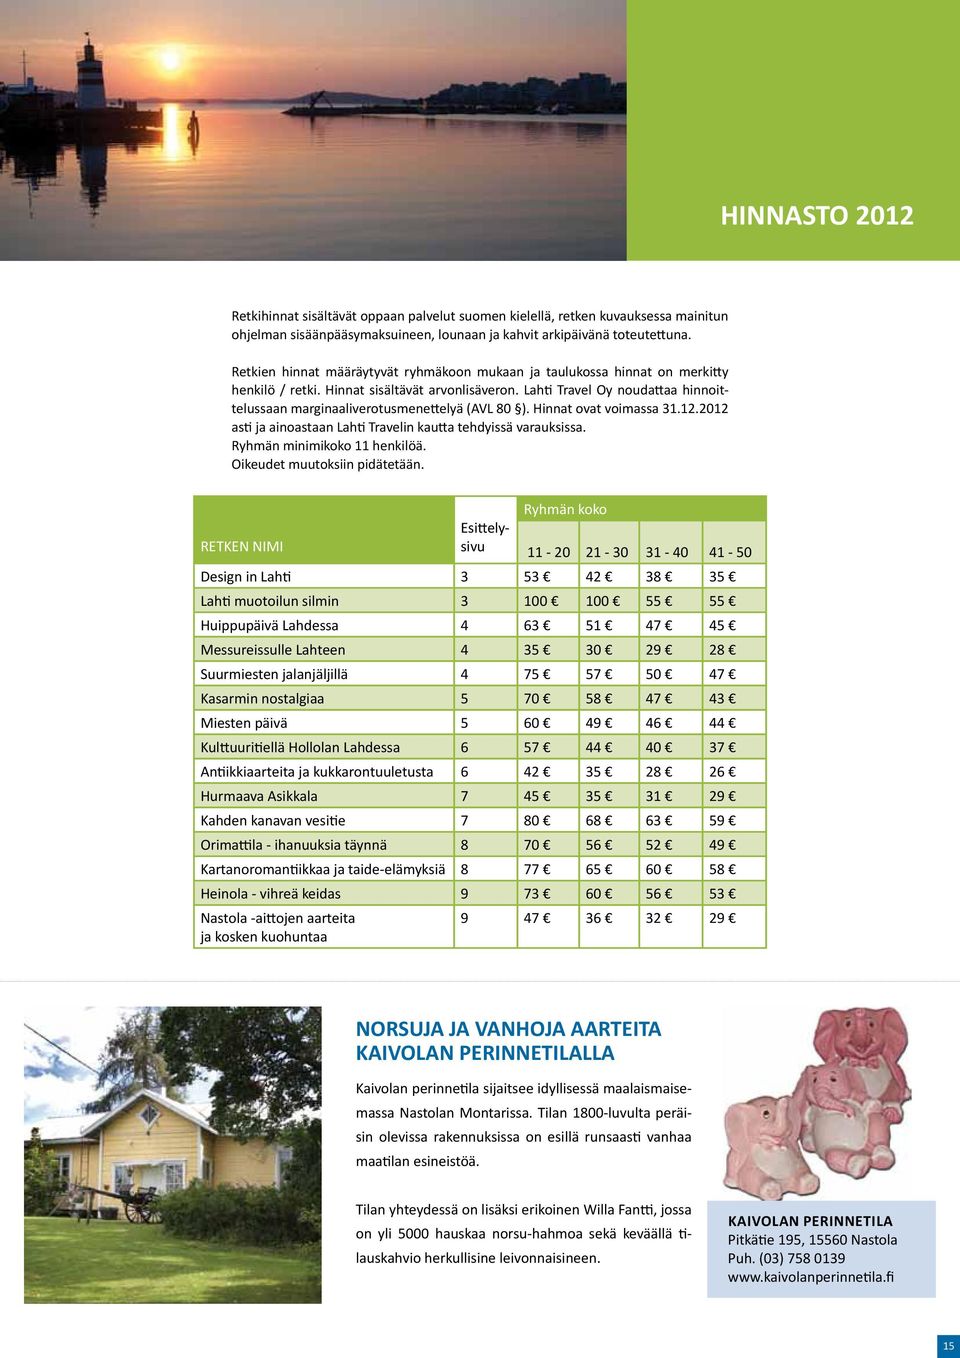 Lahti Travel Oy noudattaa hinnoittelussaan marginaaliverotusmenettelyä (AVL 80 ). Hinnat ovat voimassa 31.12.2012 asti ja ainoastaan Lahti Travelin kautta tehdyissä varauksissa.